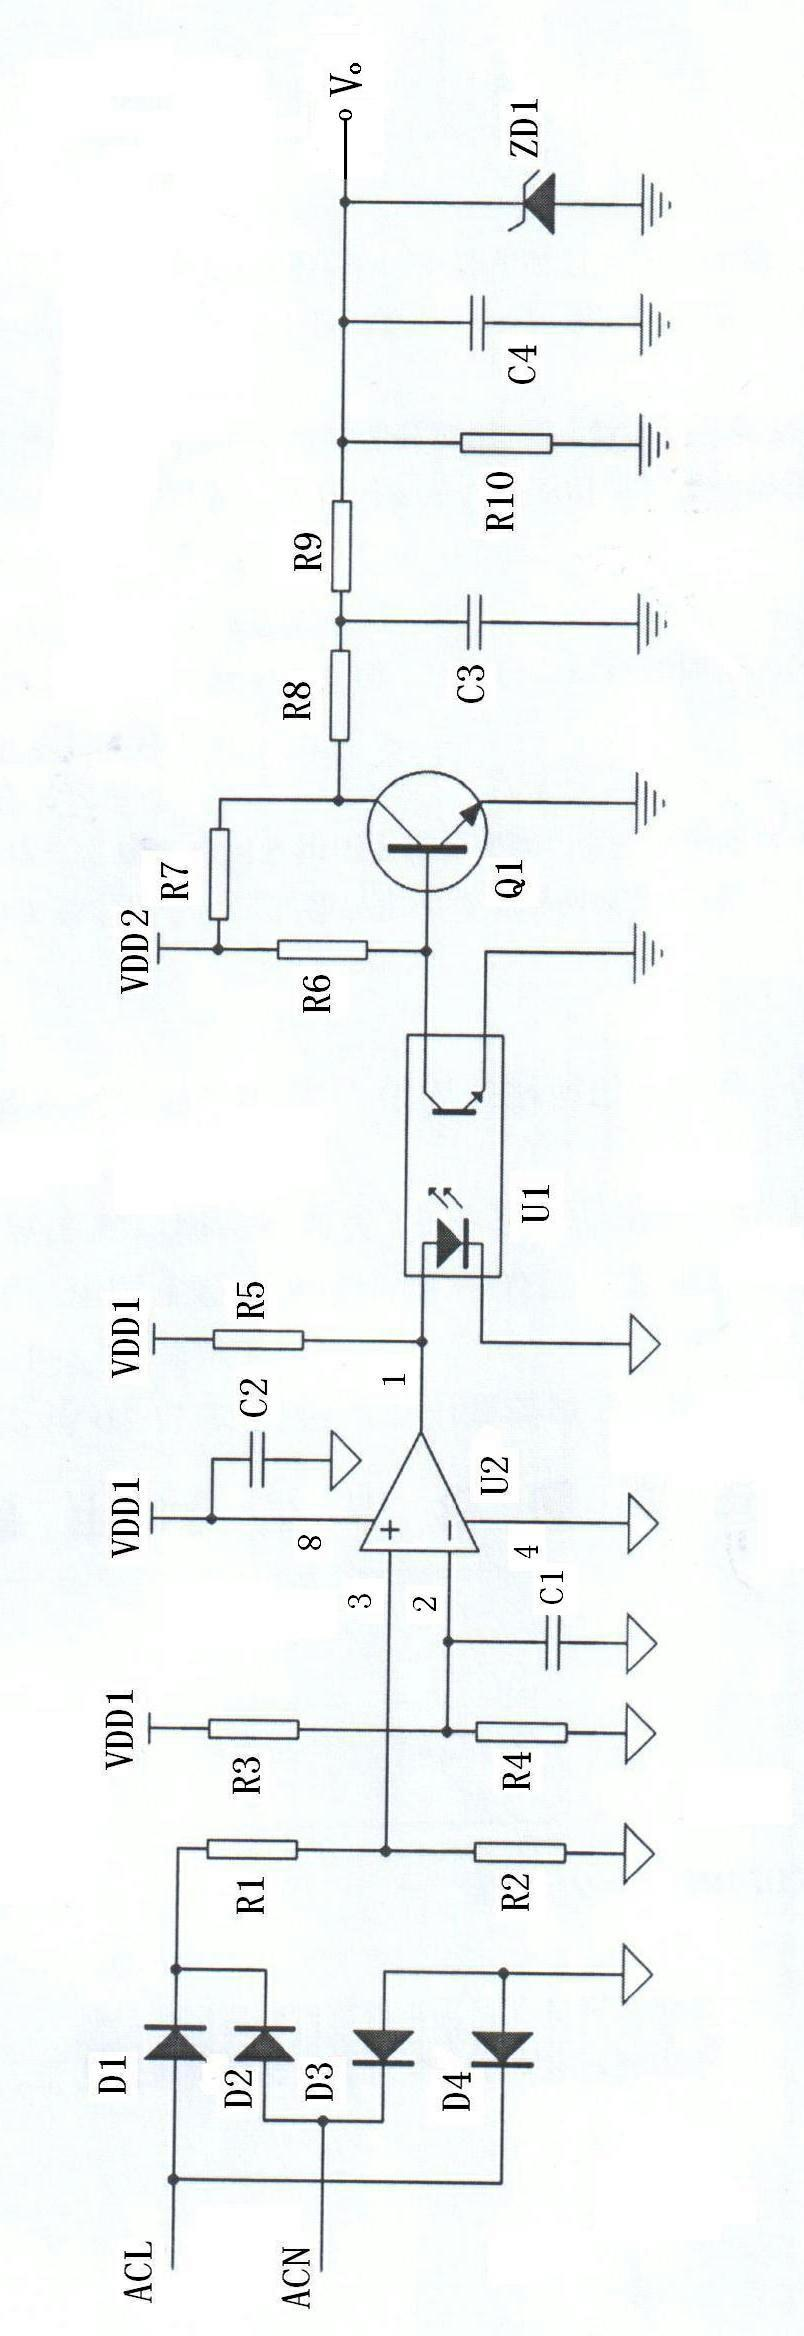 Voltage sampling circuit